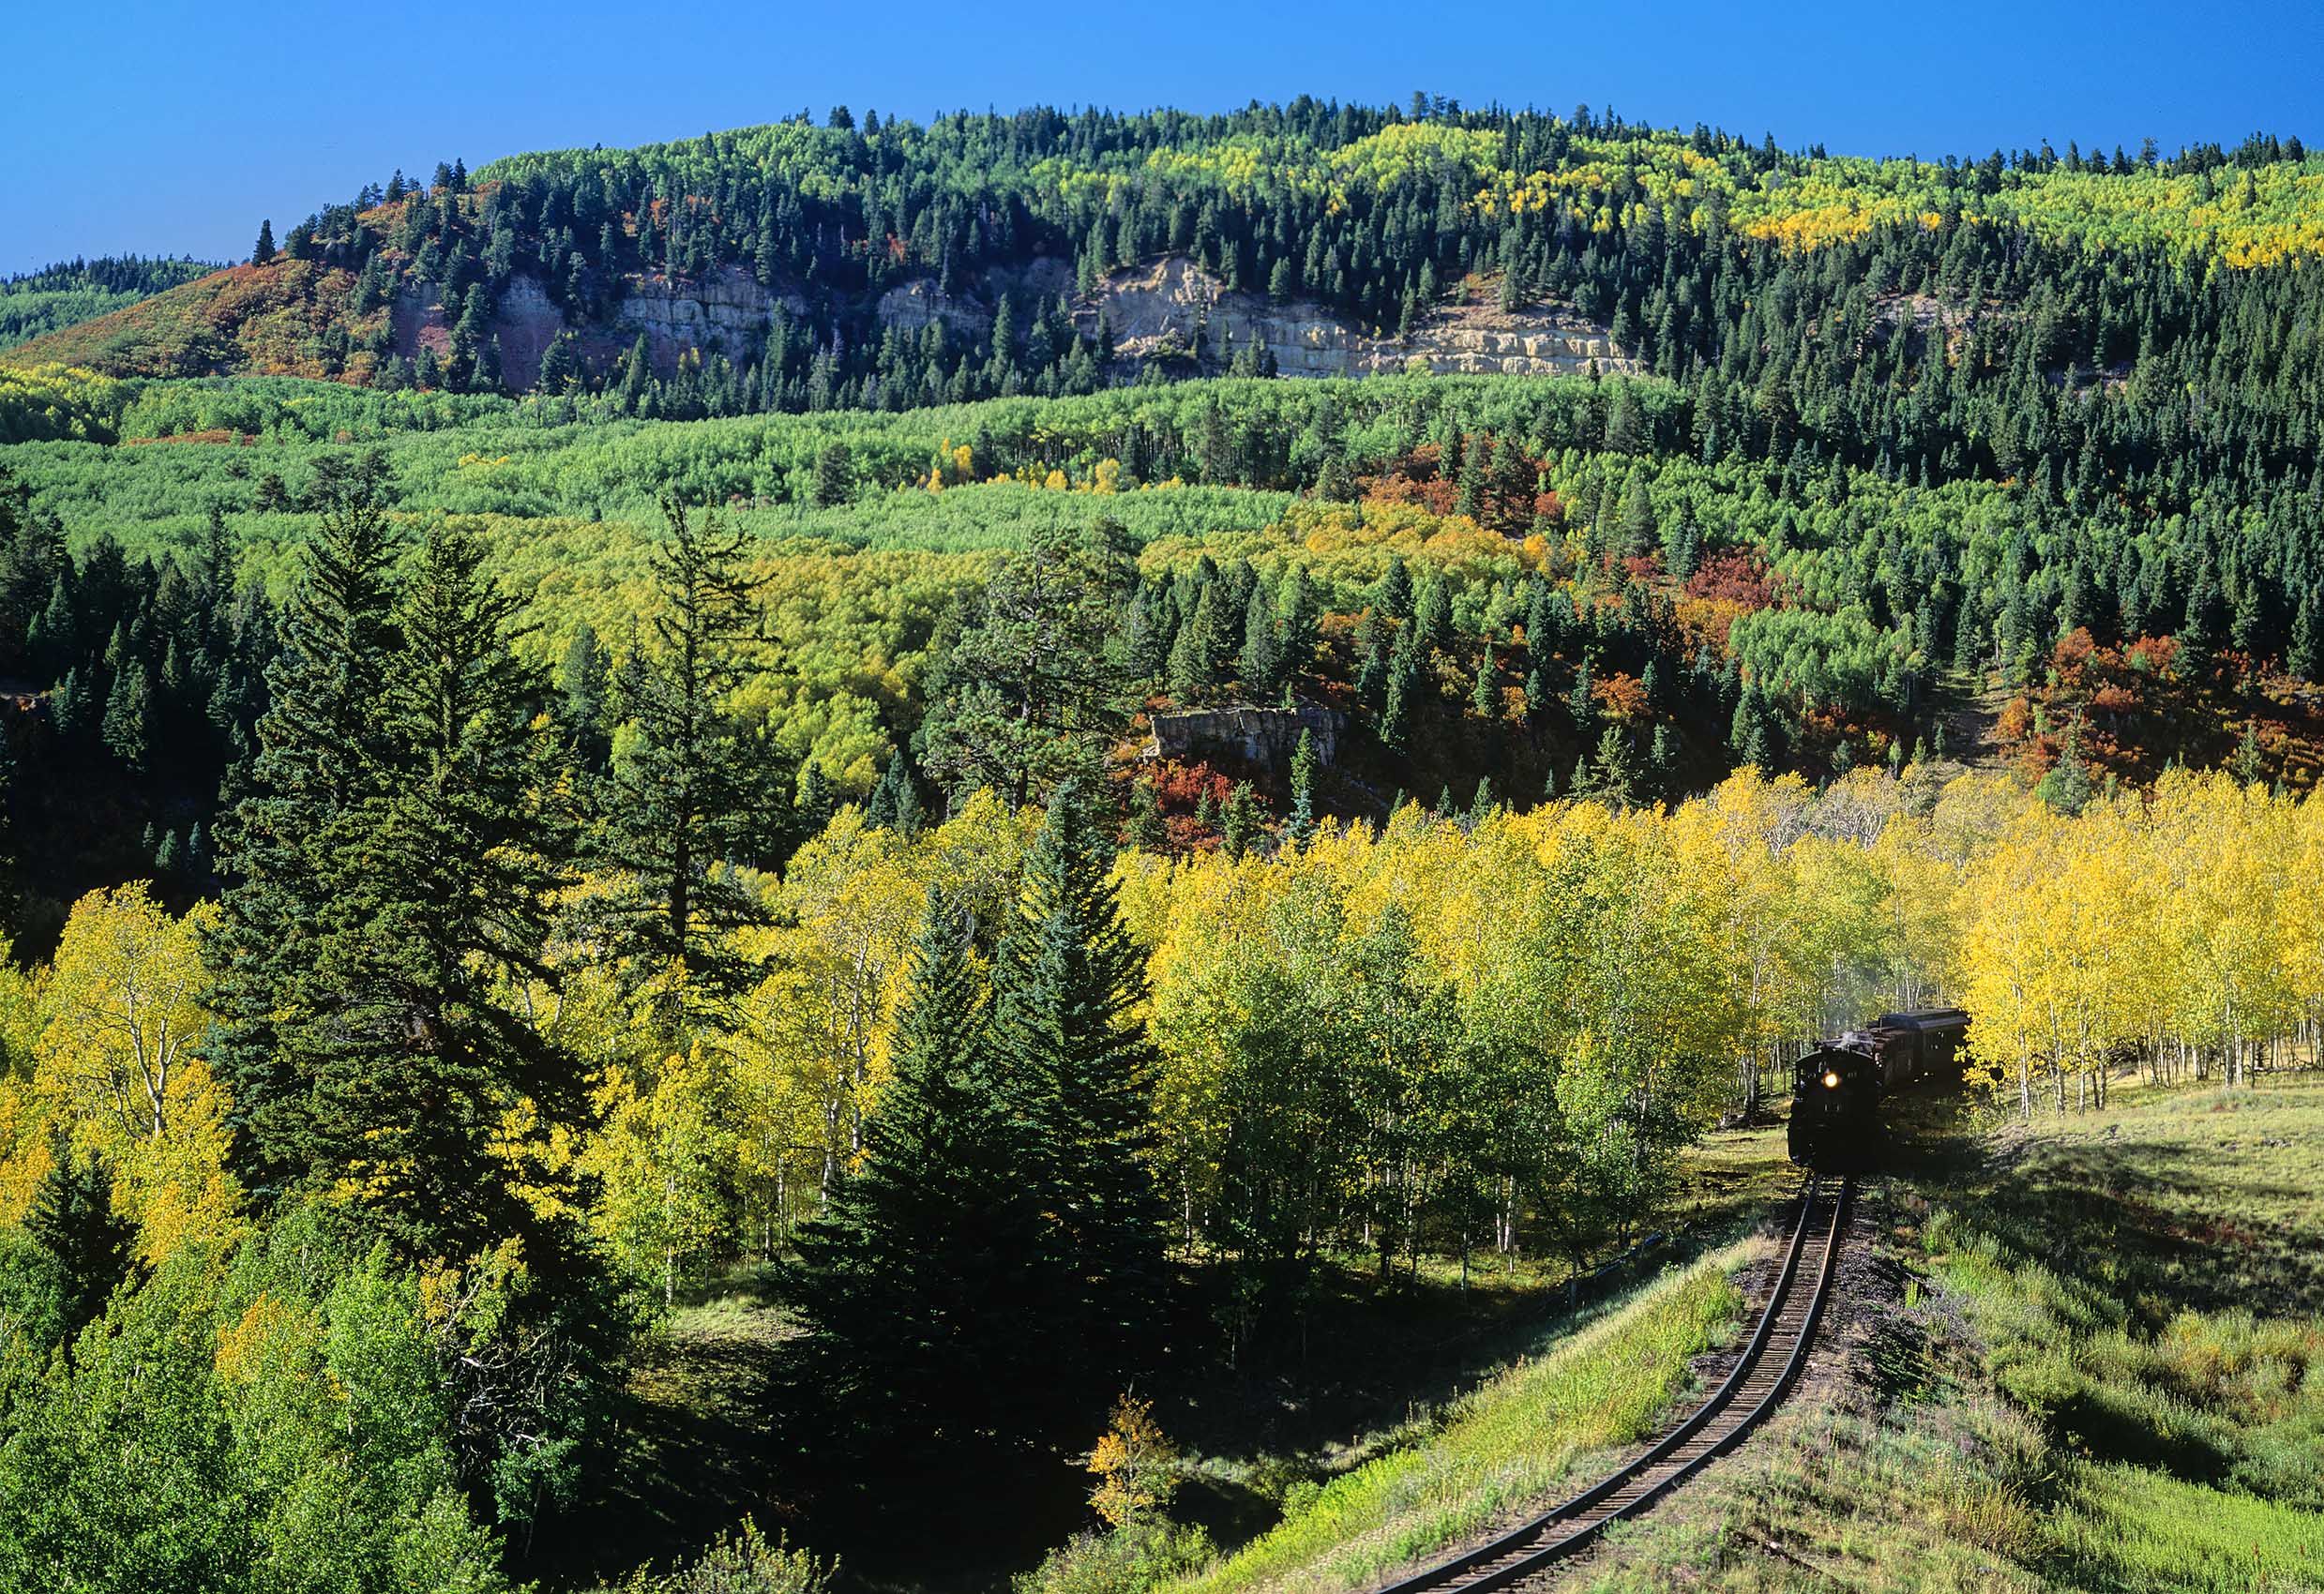 Cumbres & Toltec Railroad